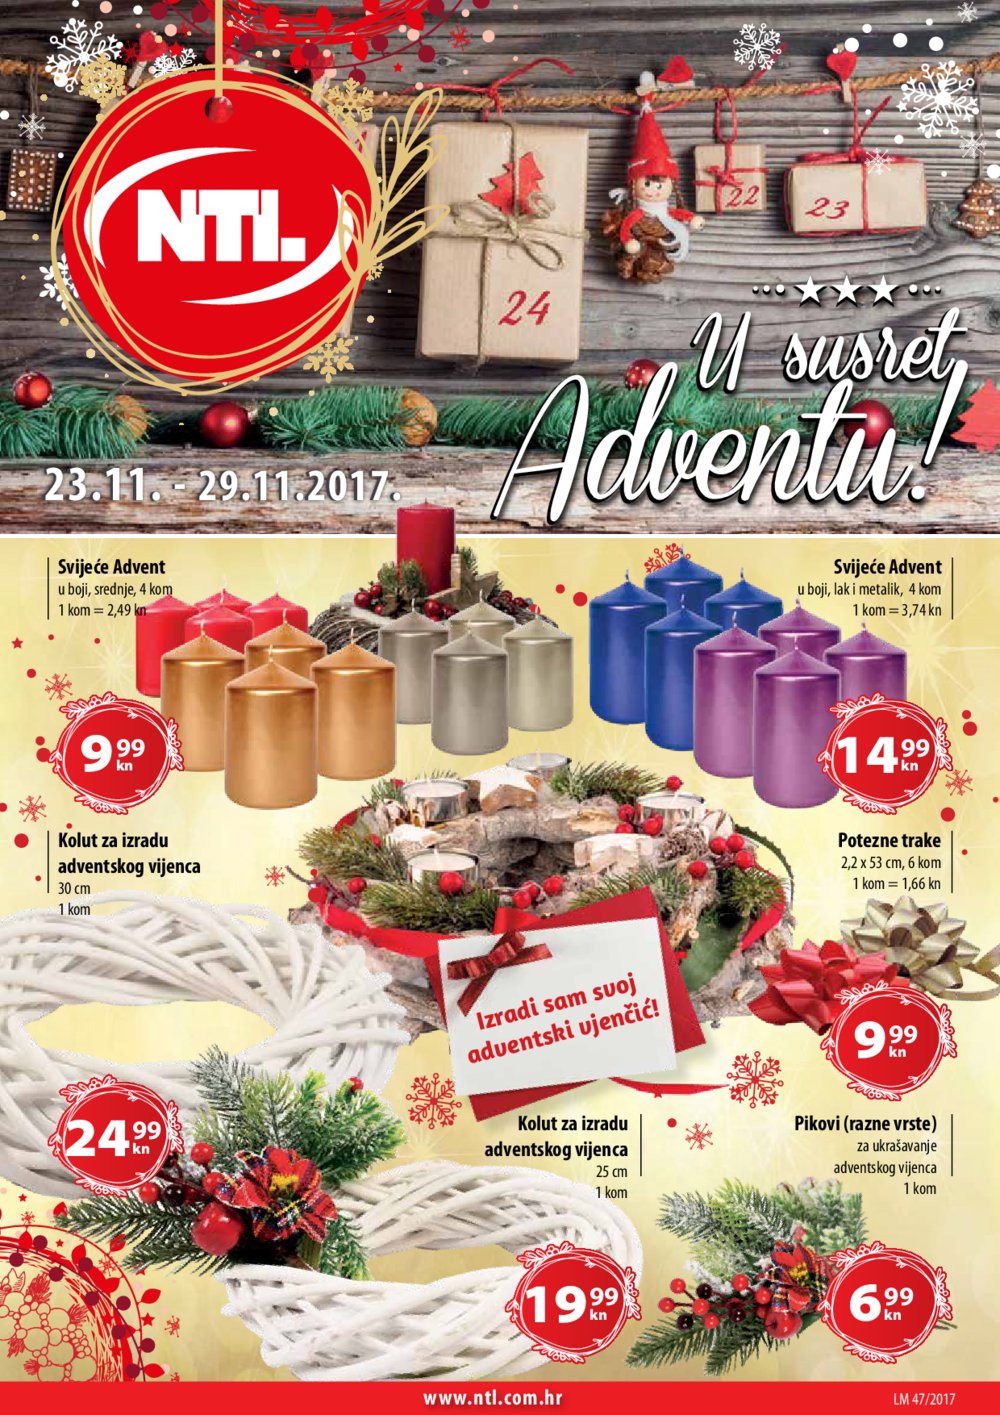 NTL katalog U susret Adventu 23.11.-29.11.2017. Istok